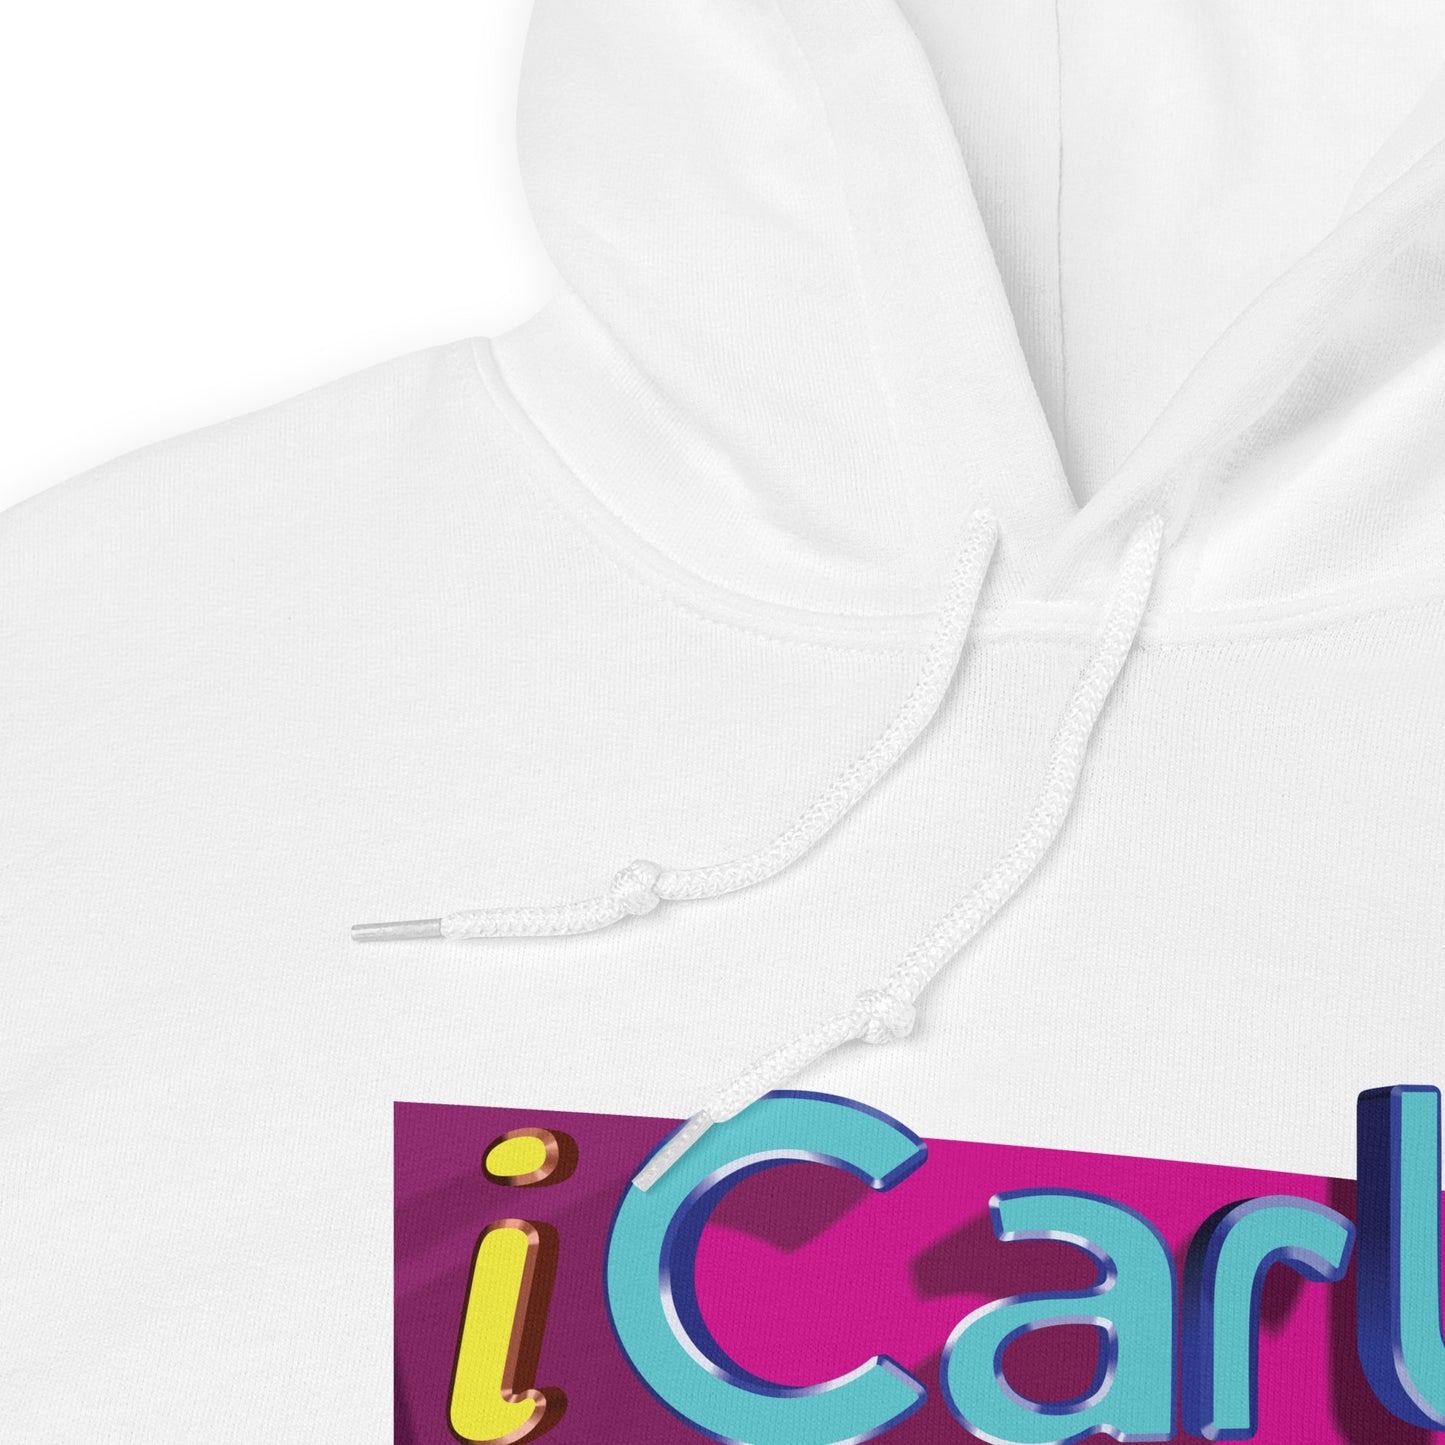 iCarly Logo Hooded Sweatshirt